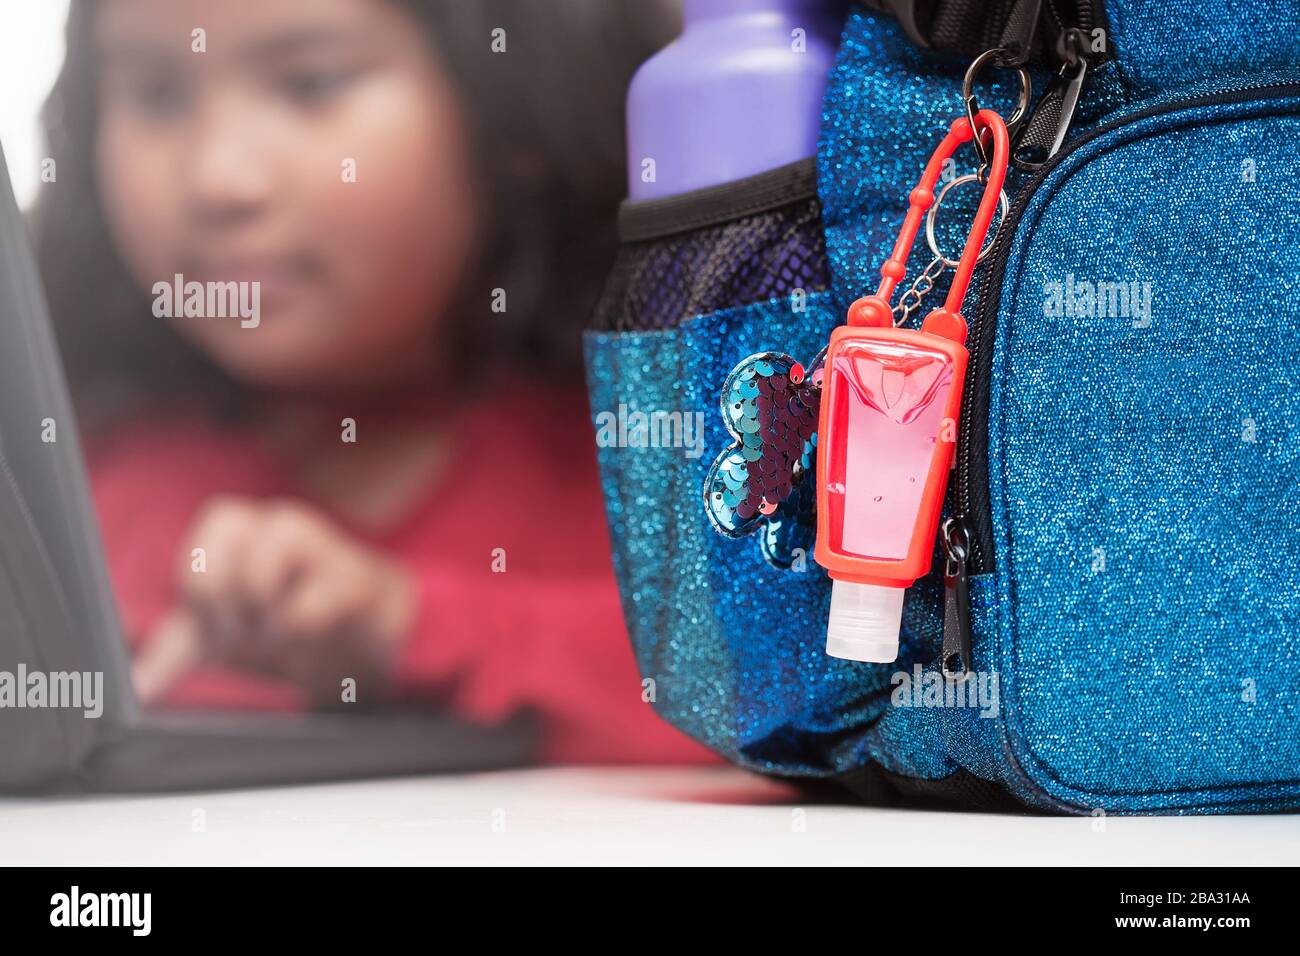 Gel-Hanitisierer, der an einem Rucksack mit Metall-Wasserflasche auf einem Schreibtisch befestigt ist, und der Student verwendet im Hintergrund einen Laptop. Stockfoto